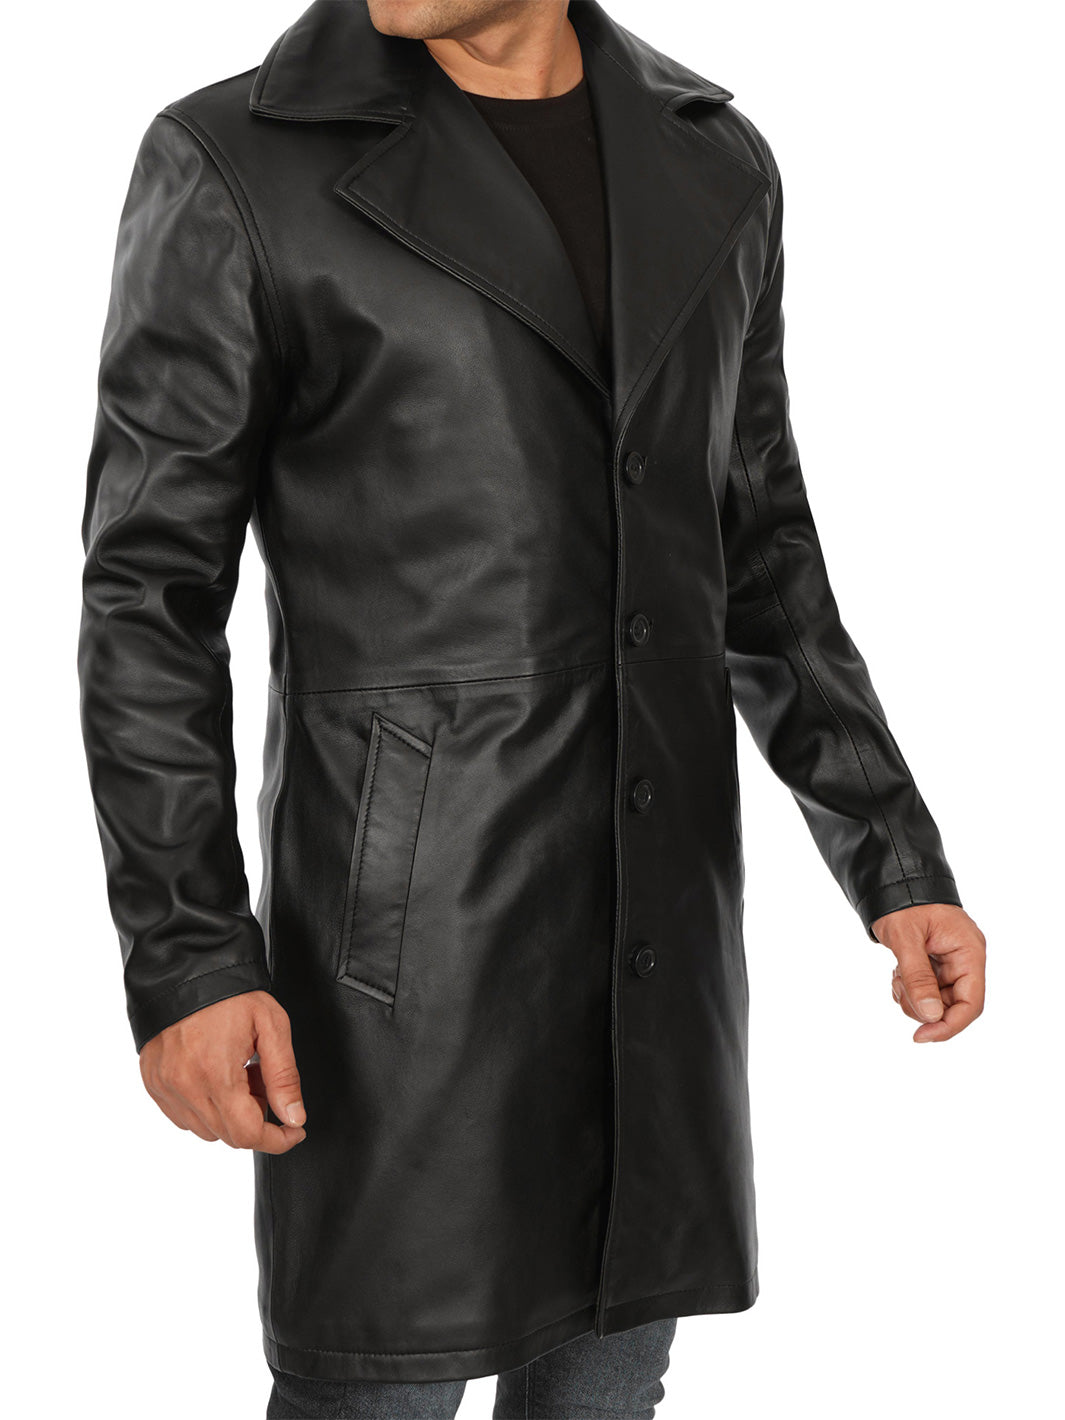 Jackson Manteau de voiture en cuir noir 3/4 longueur homme 